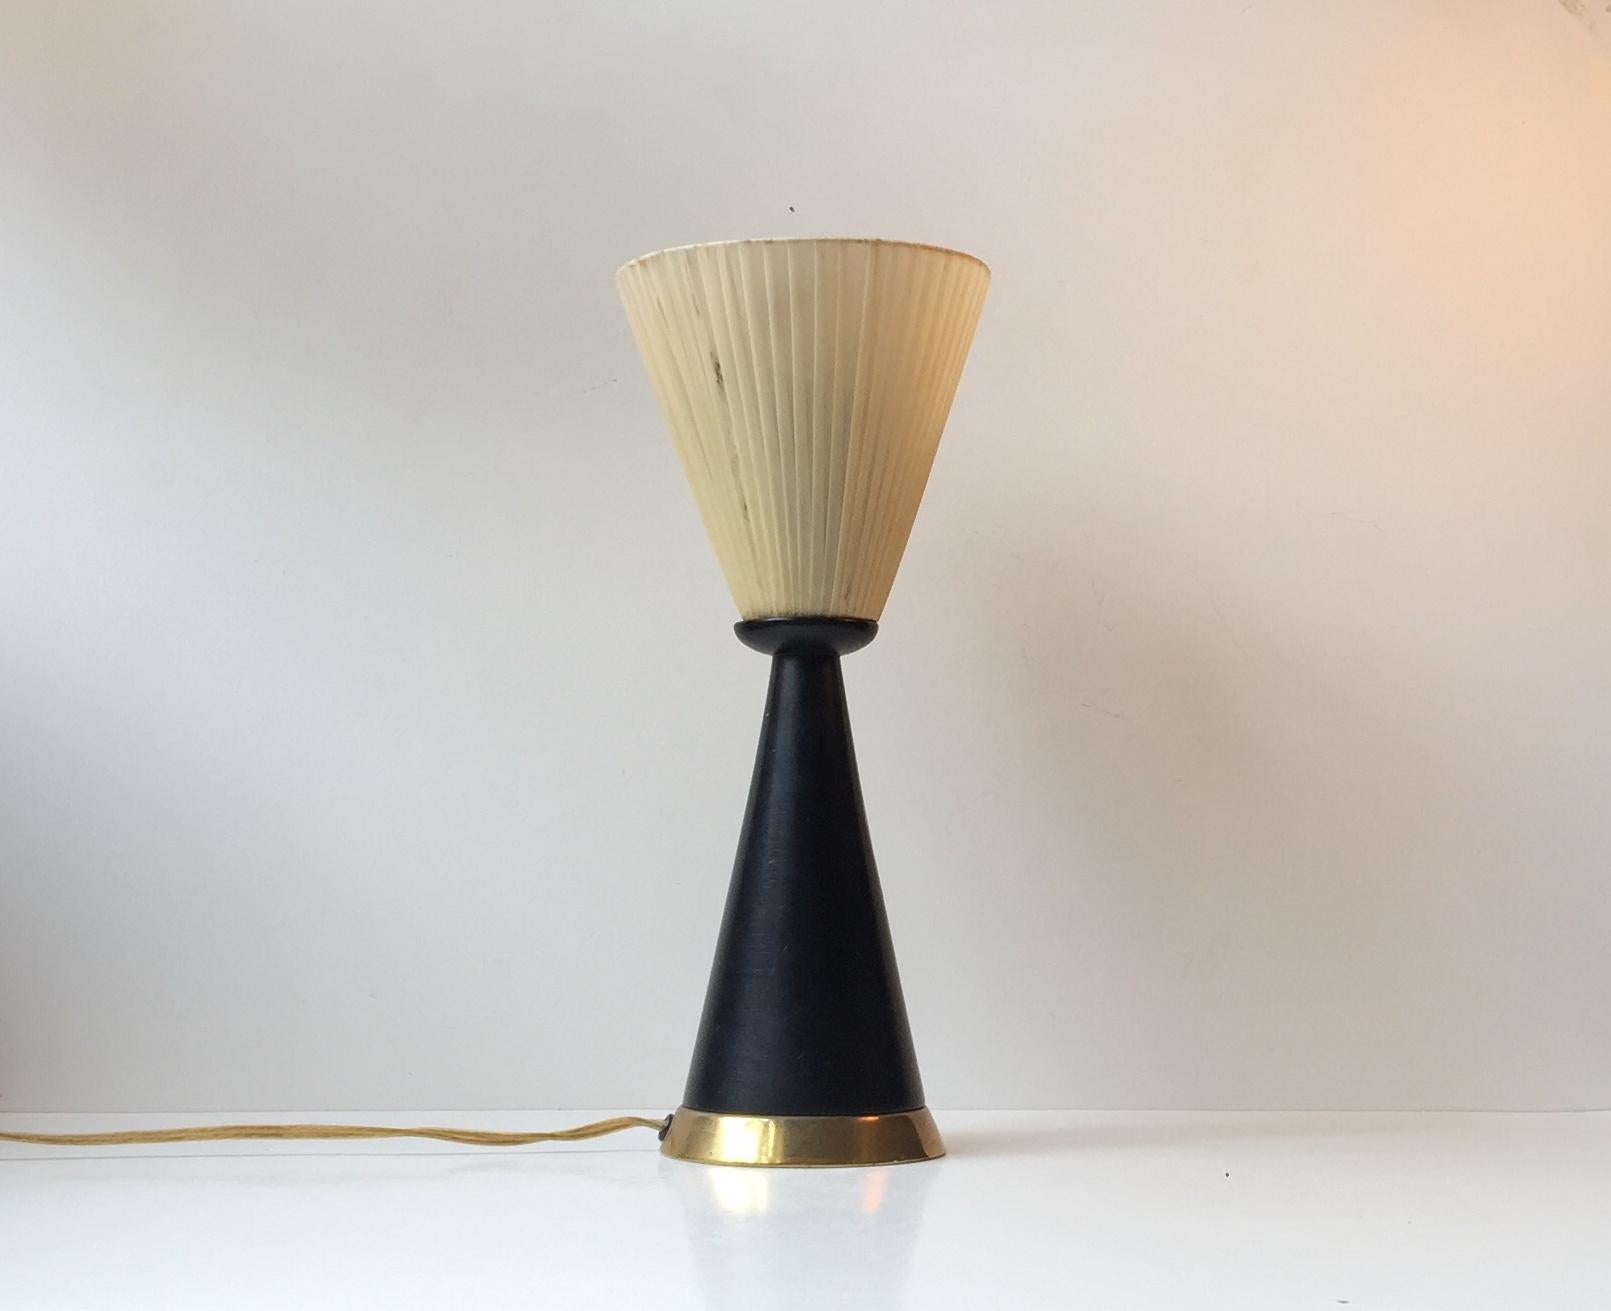 Lampe de table Diablo composée d'un cône en bois laqué noir, d'une base en laiton et d'un abat-jour conique enveloppé de tissu à l'envers. Il a été fabriqué en Italie dans les années 1960 dans un style qui rappelle celui de Stilnovo et de Svend Aage